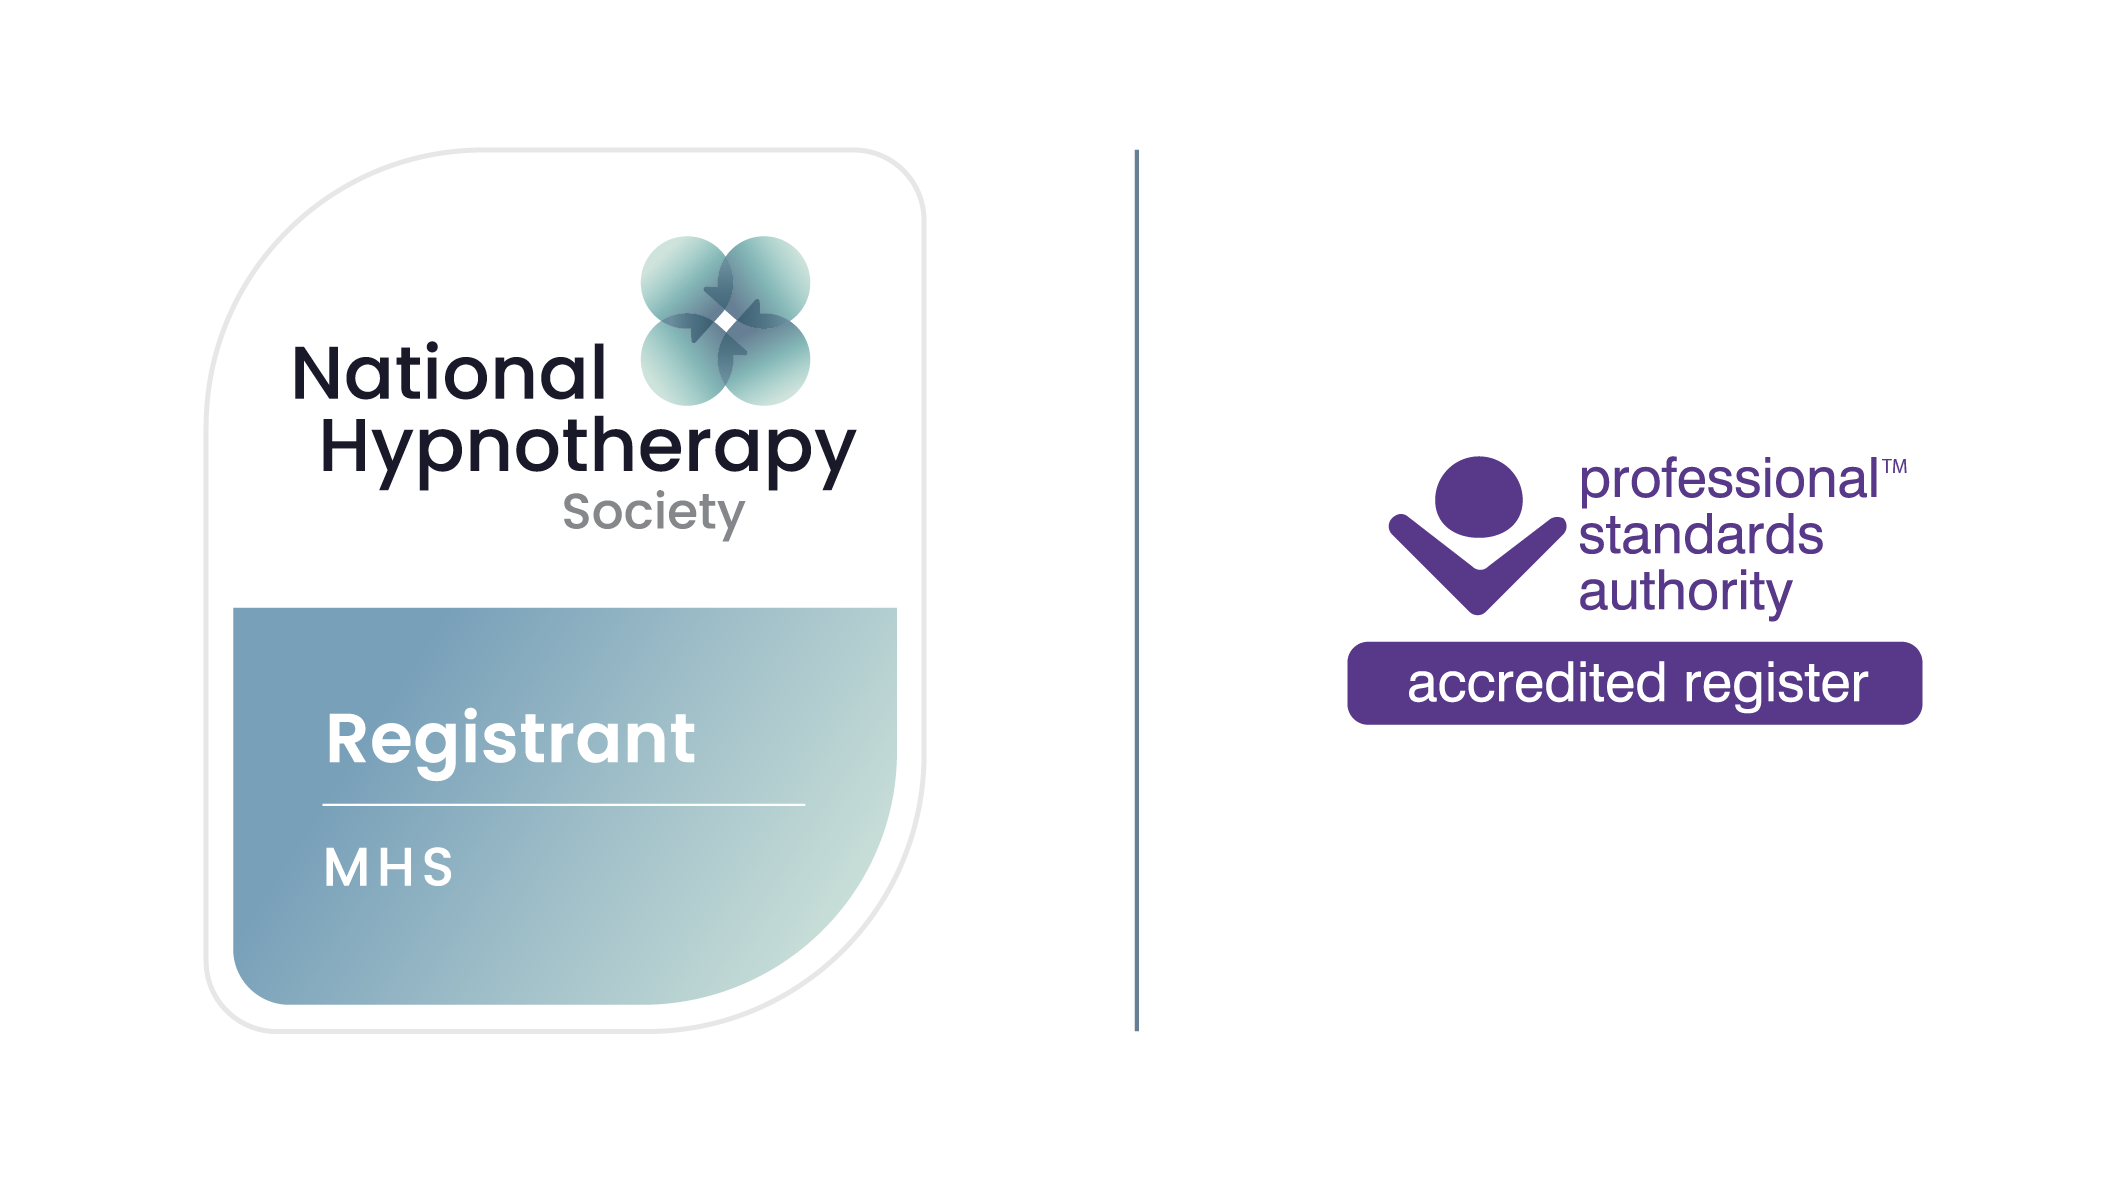 Hypnotherapy Society registrant logo